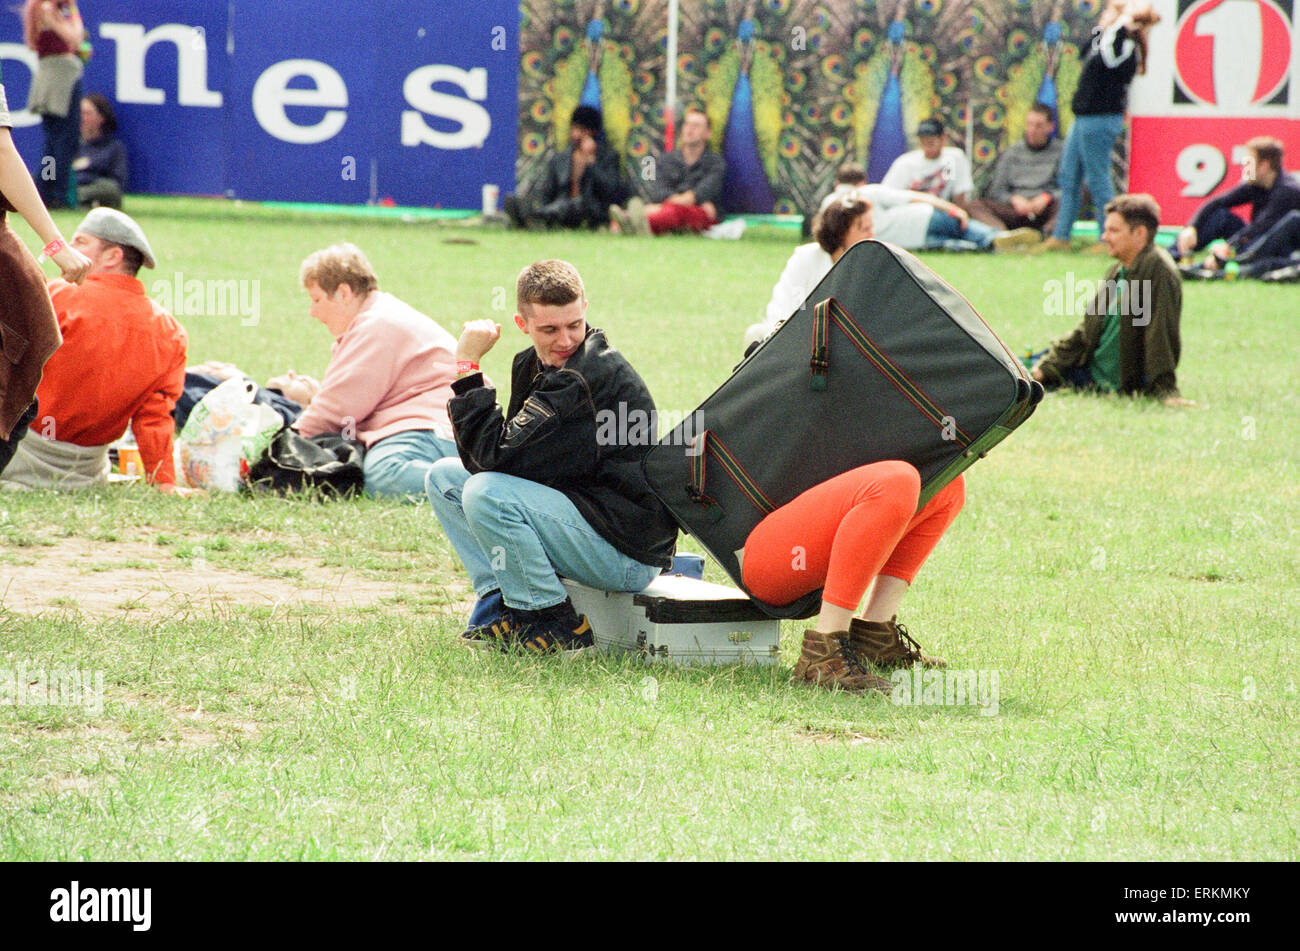 T dans le parc Music Festival, Strathclyde Park, Lanarkshire, en Écosse, le 14 juillet 1996. Banque D'Images